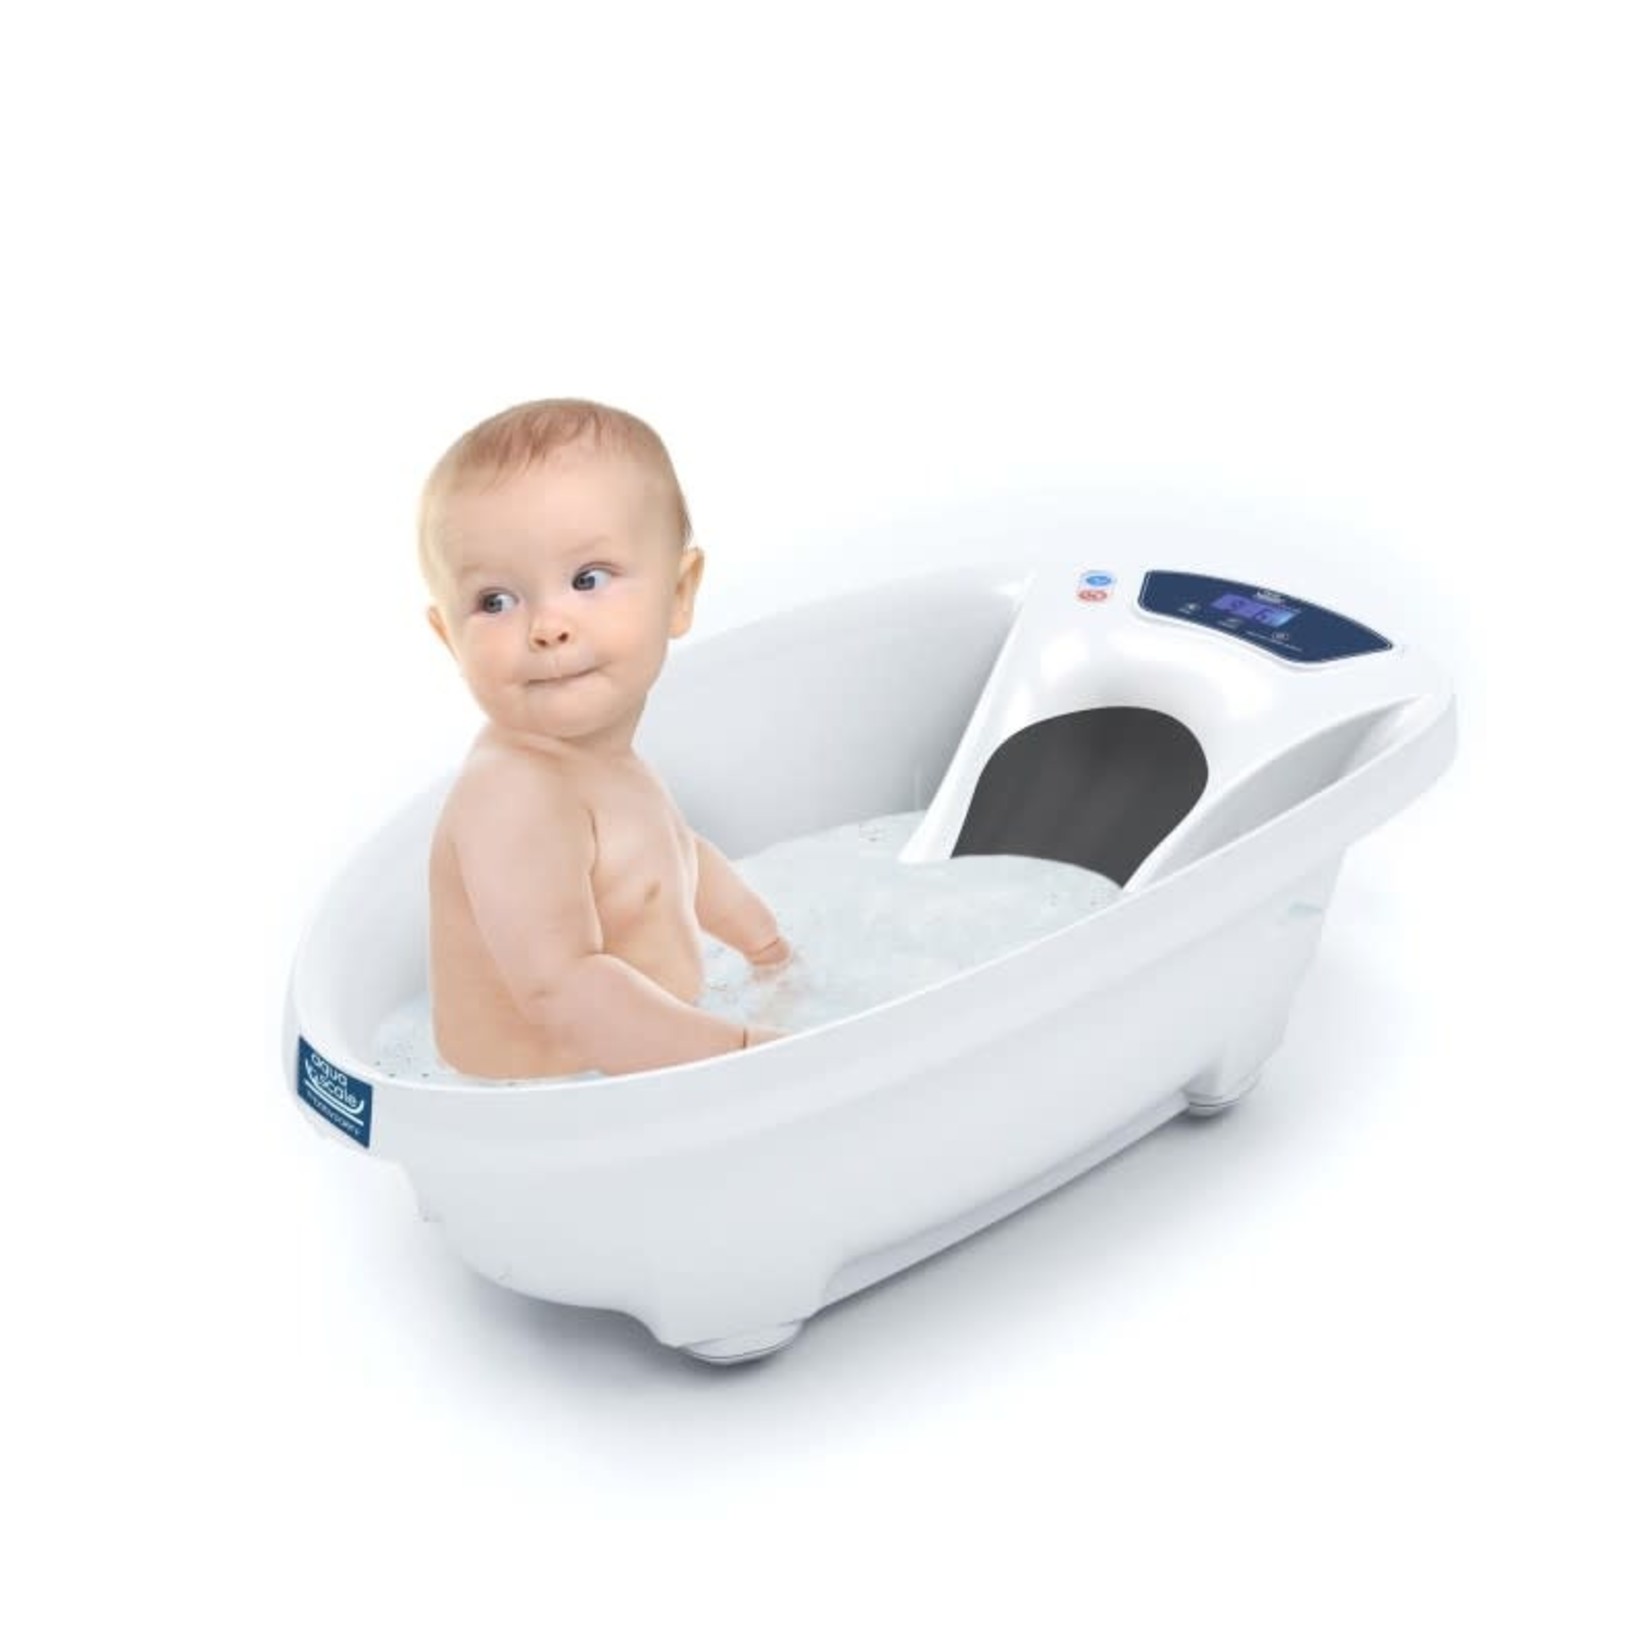 Babypatent Aquascale babybad en babyweegschaal